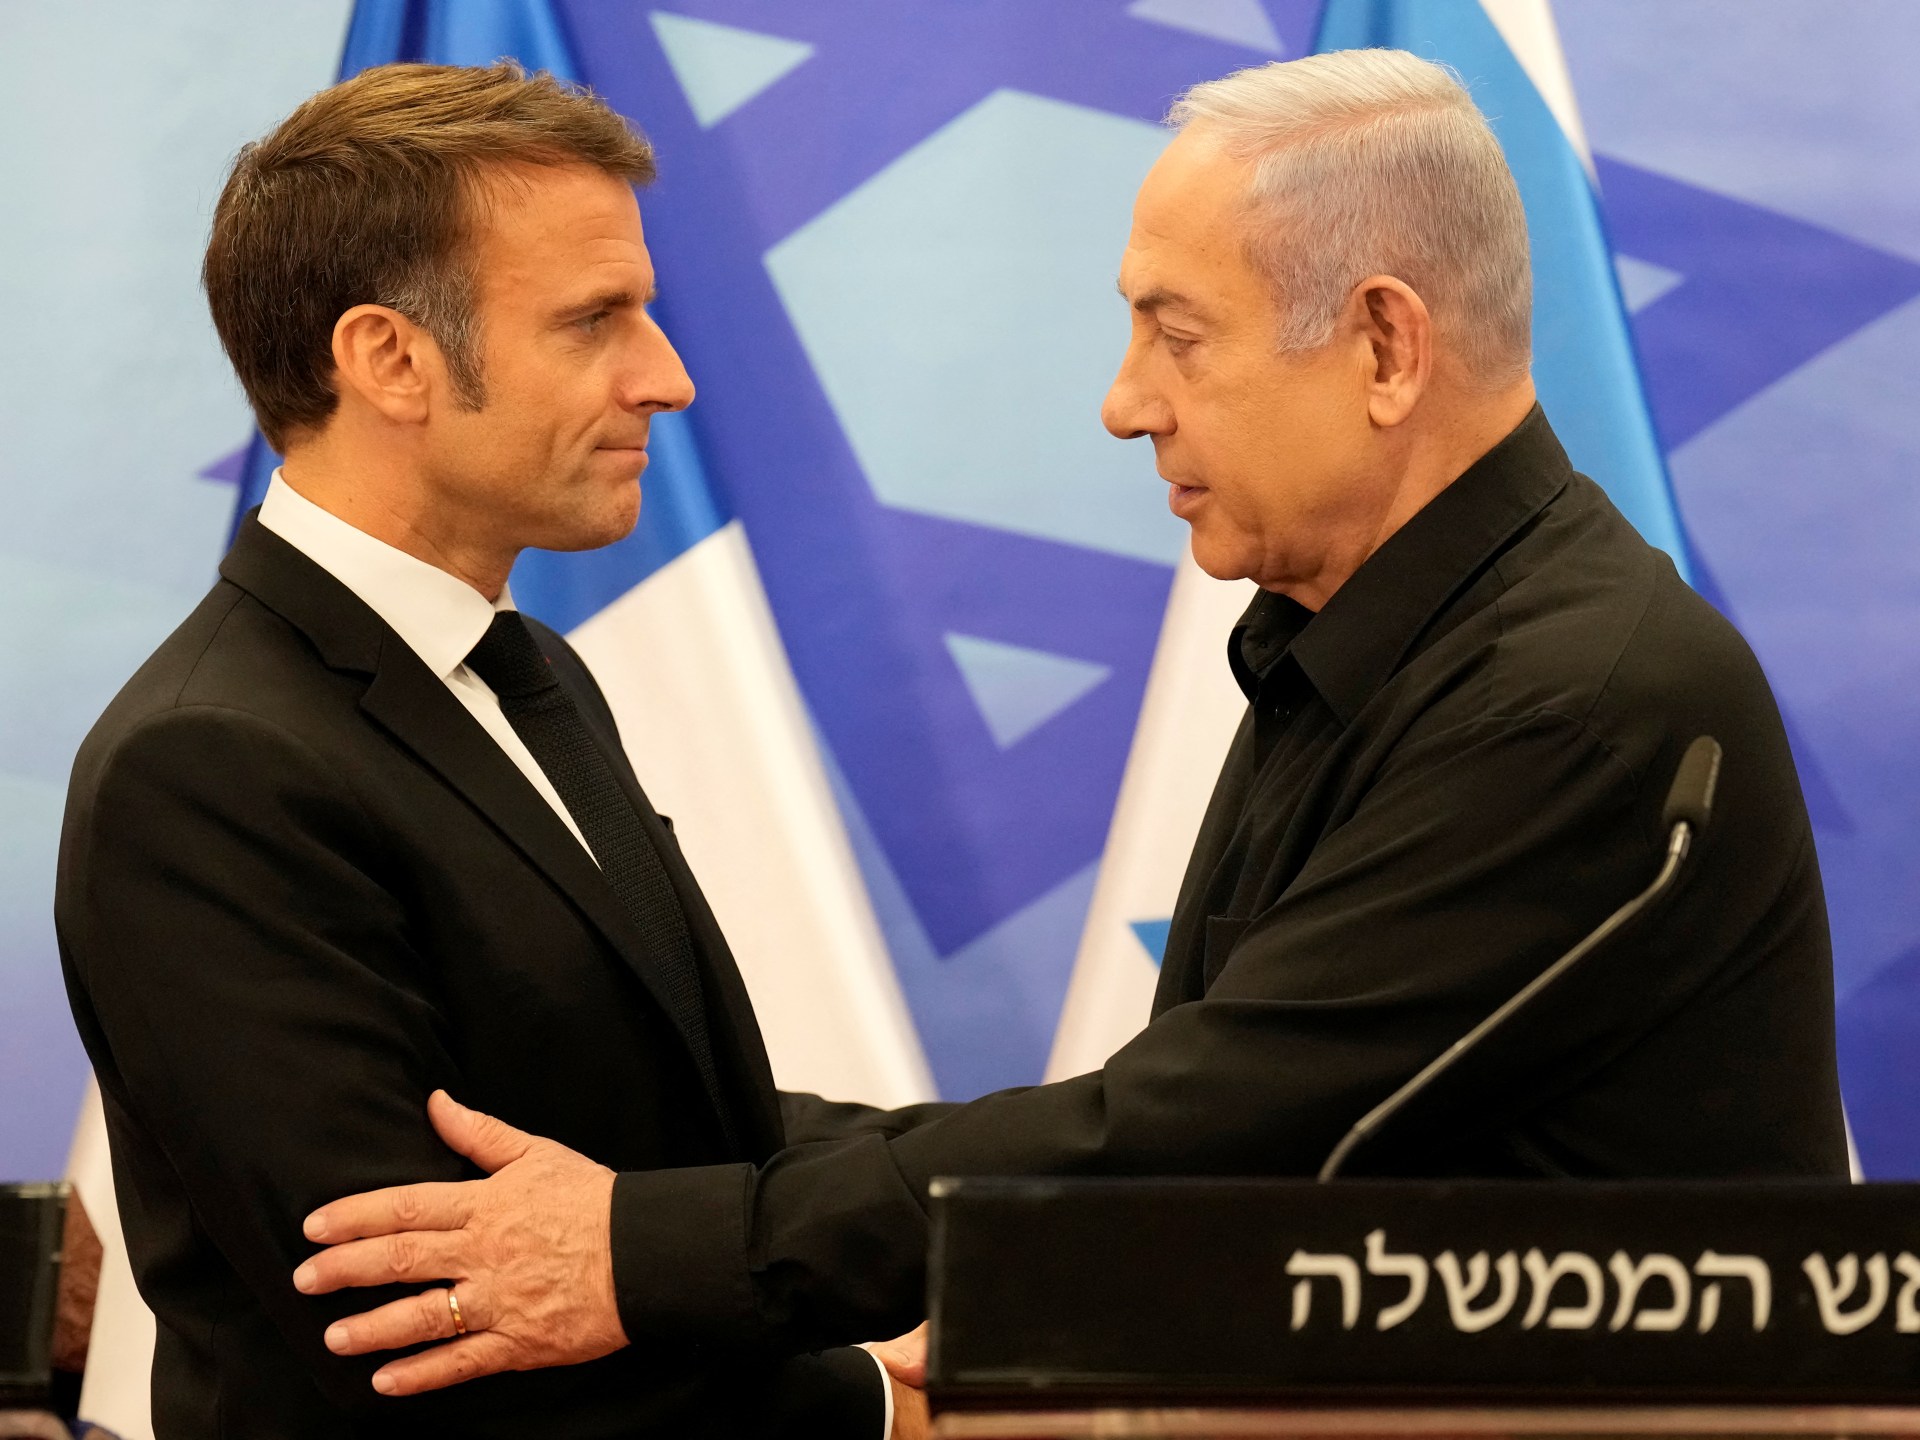 شاهد.. ملف الشهر يبحث خفايا تذبذب العلاقات الفرنسية الإسرائيلية | أخبار – البوكس نيوز